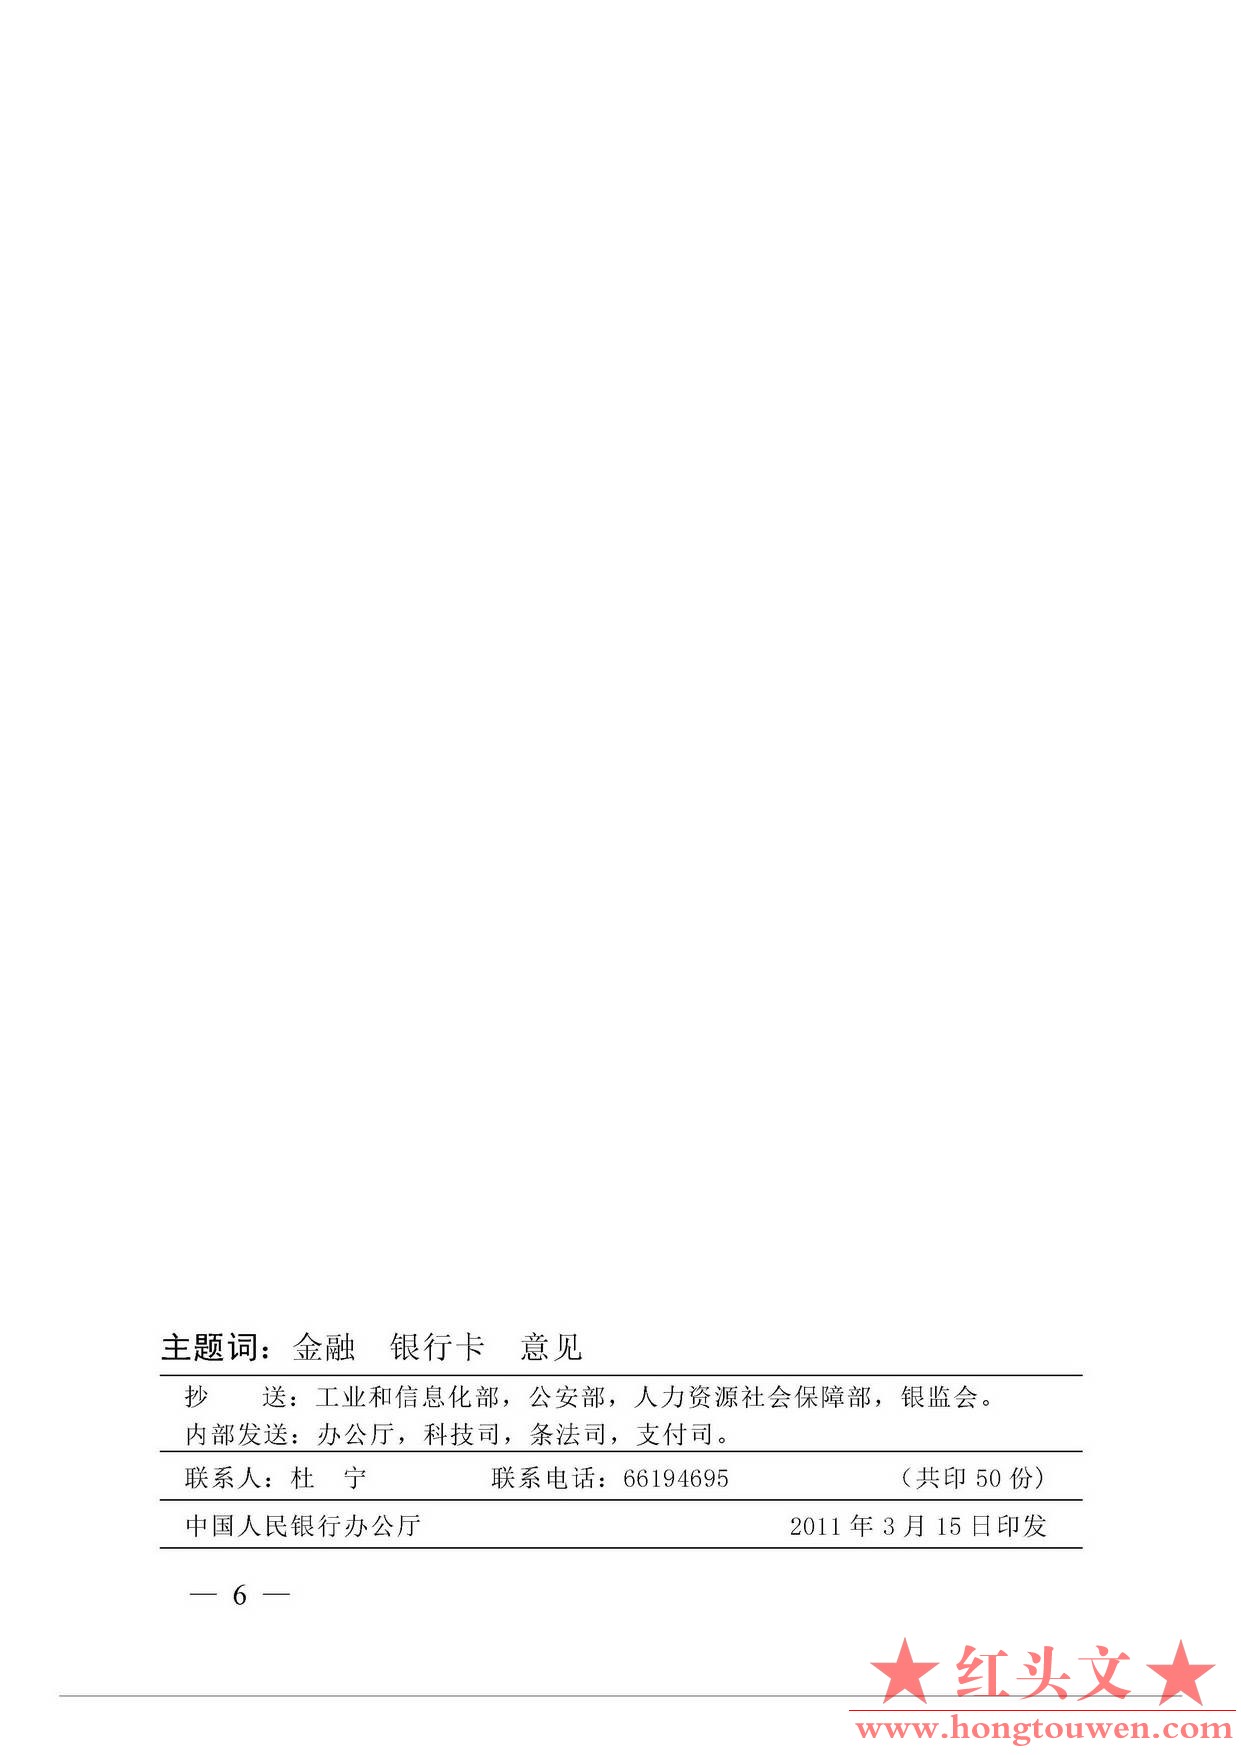 银发[2011]64号-中国人民银行关于推进金融IC卡应用工作的意见_页面_6.jpg.jpg